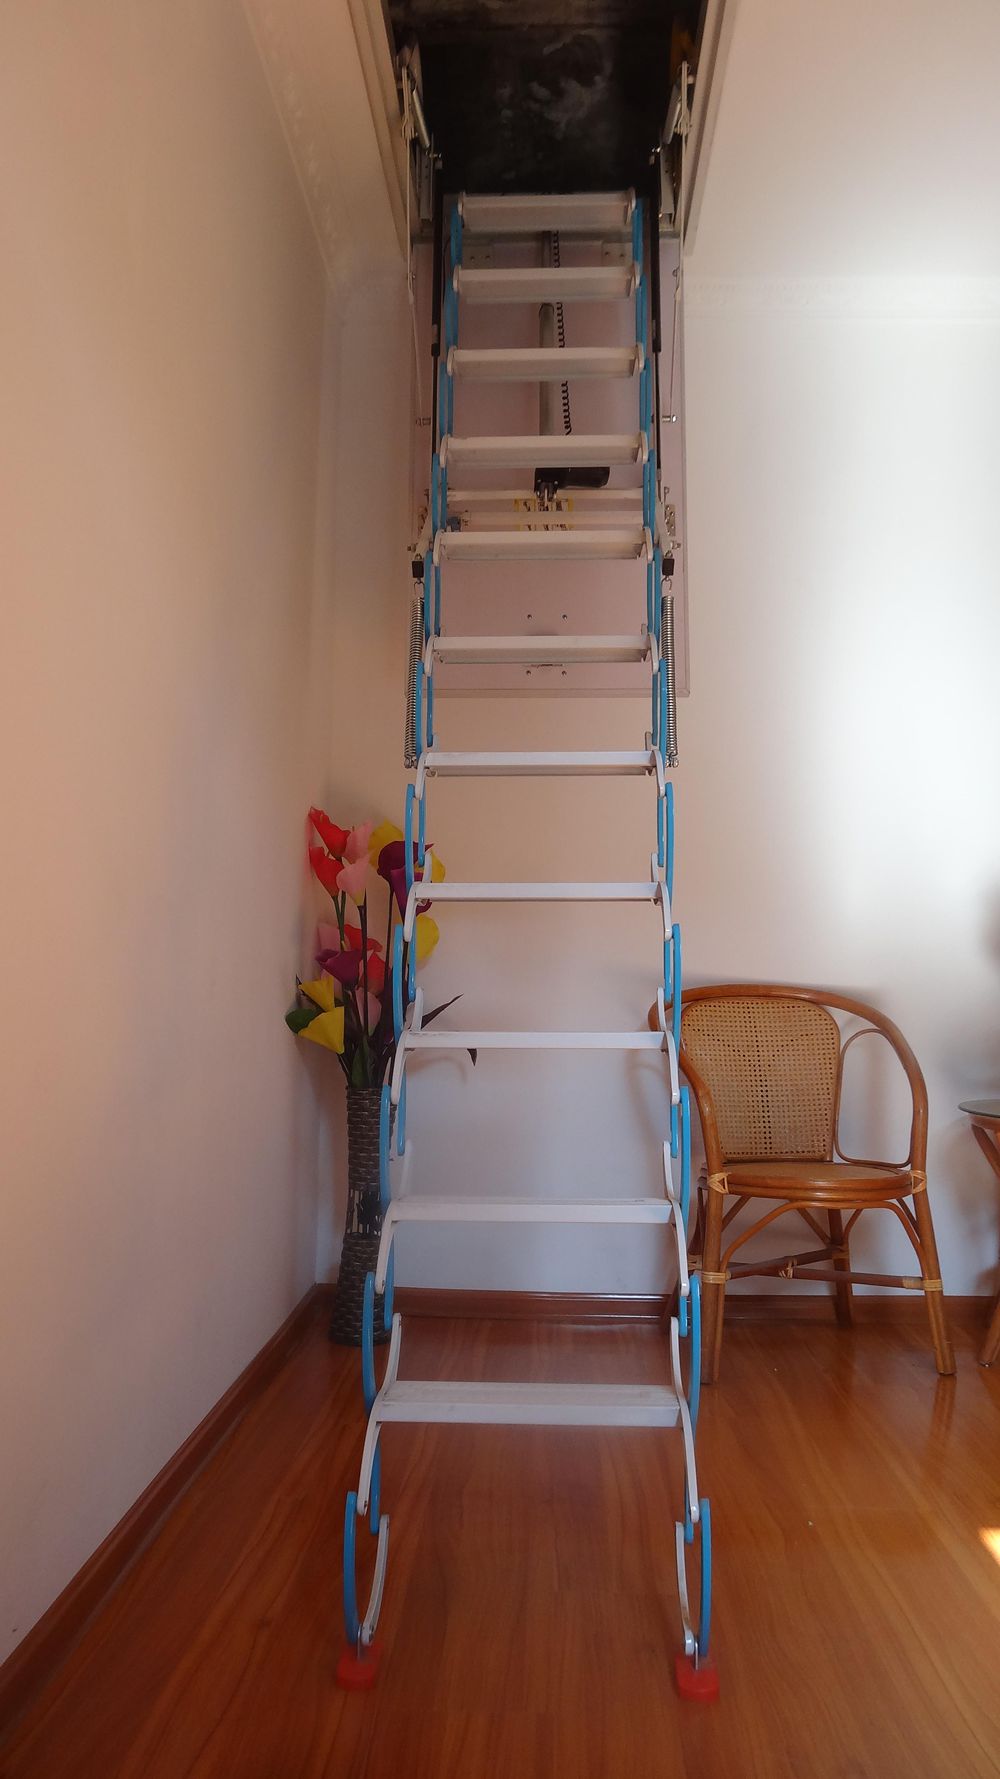 哪个厂家有卖阁楼伸缩楼梯,阁楼伸缩楼梯的价钱贵吗?